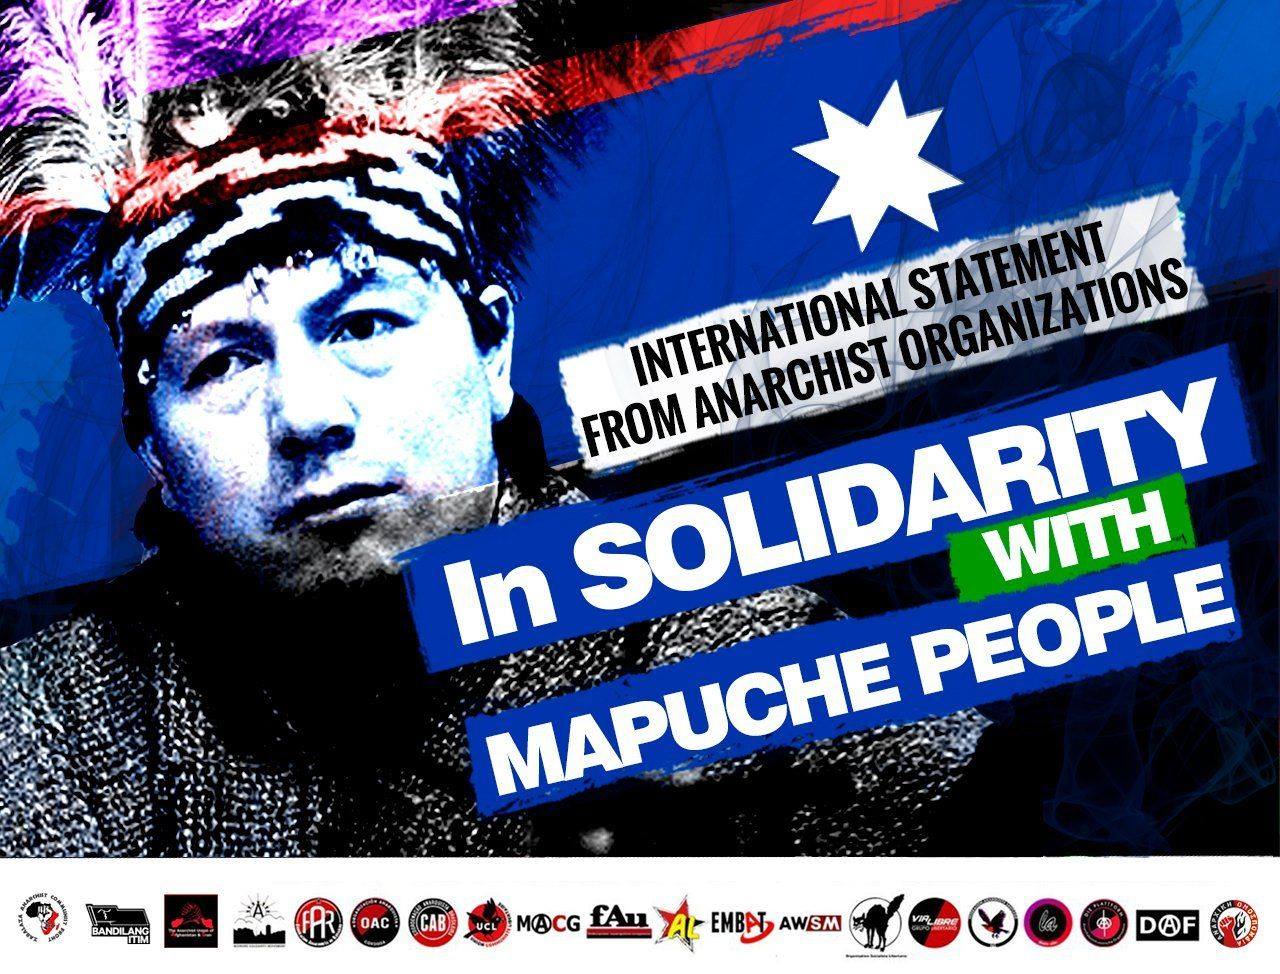 Αλληλεγγύη στον αγώνα των Μαπούτσε! | Διεθνιστική ανακοίνωση της Αναρχικής Ομοσπονδίας από κοινού με αναρχικές οργανώσεις και ομοσπονδίες του εξωτερικού.